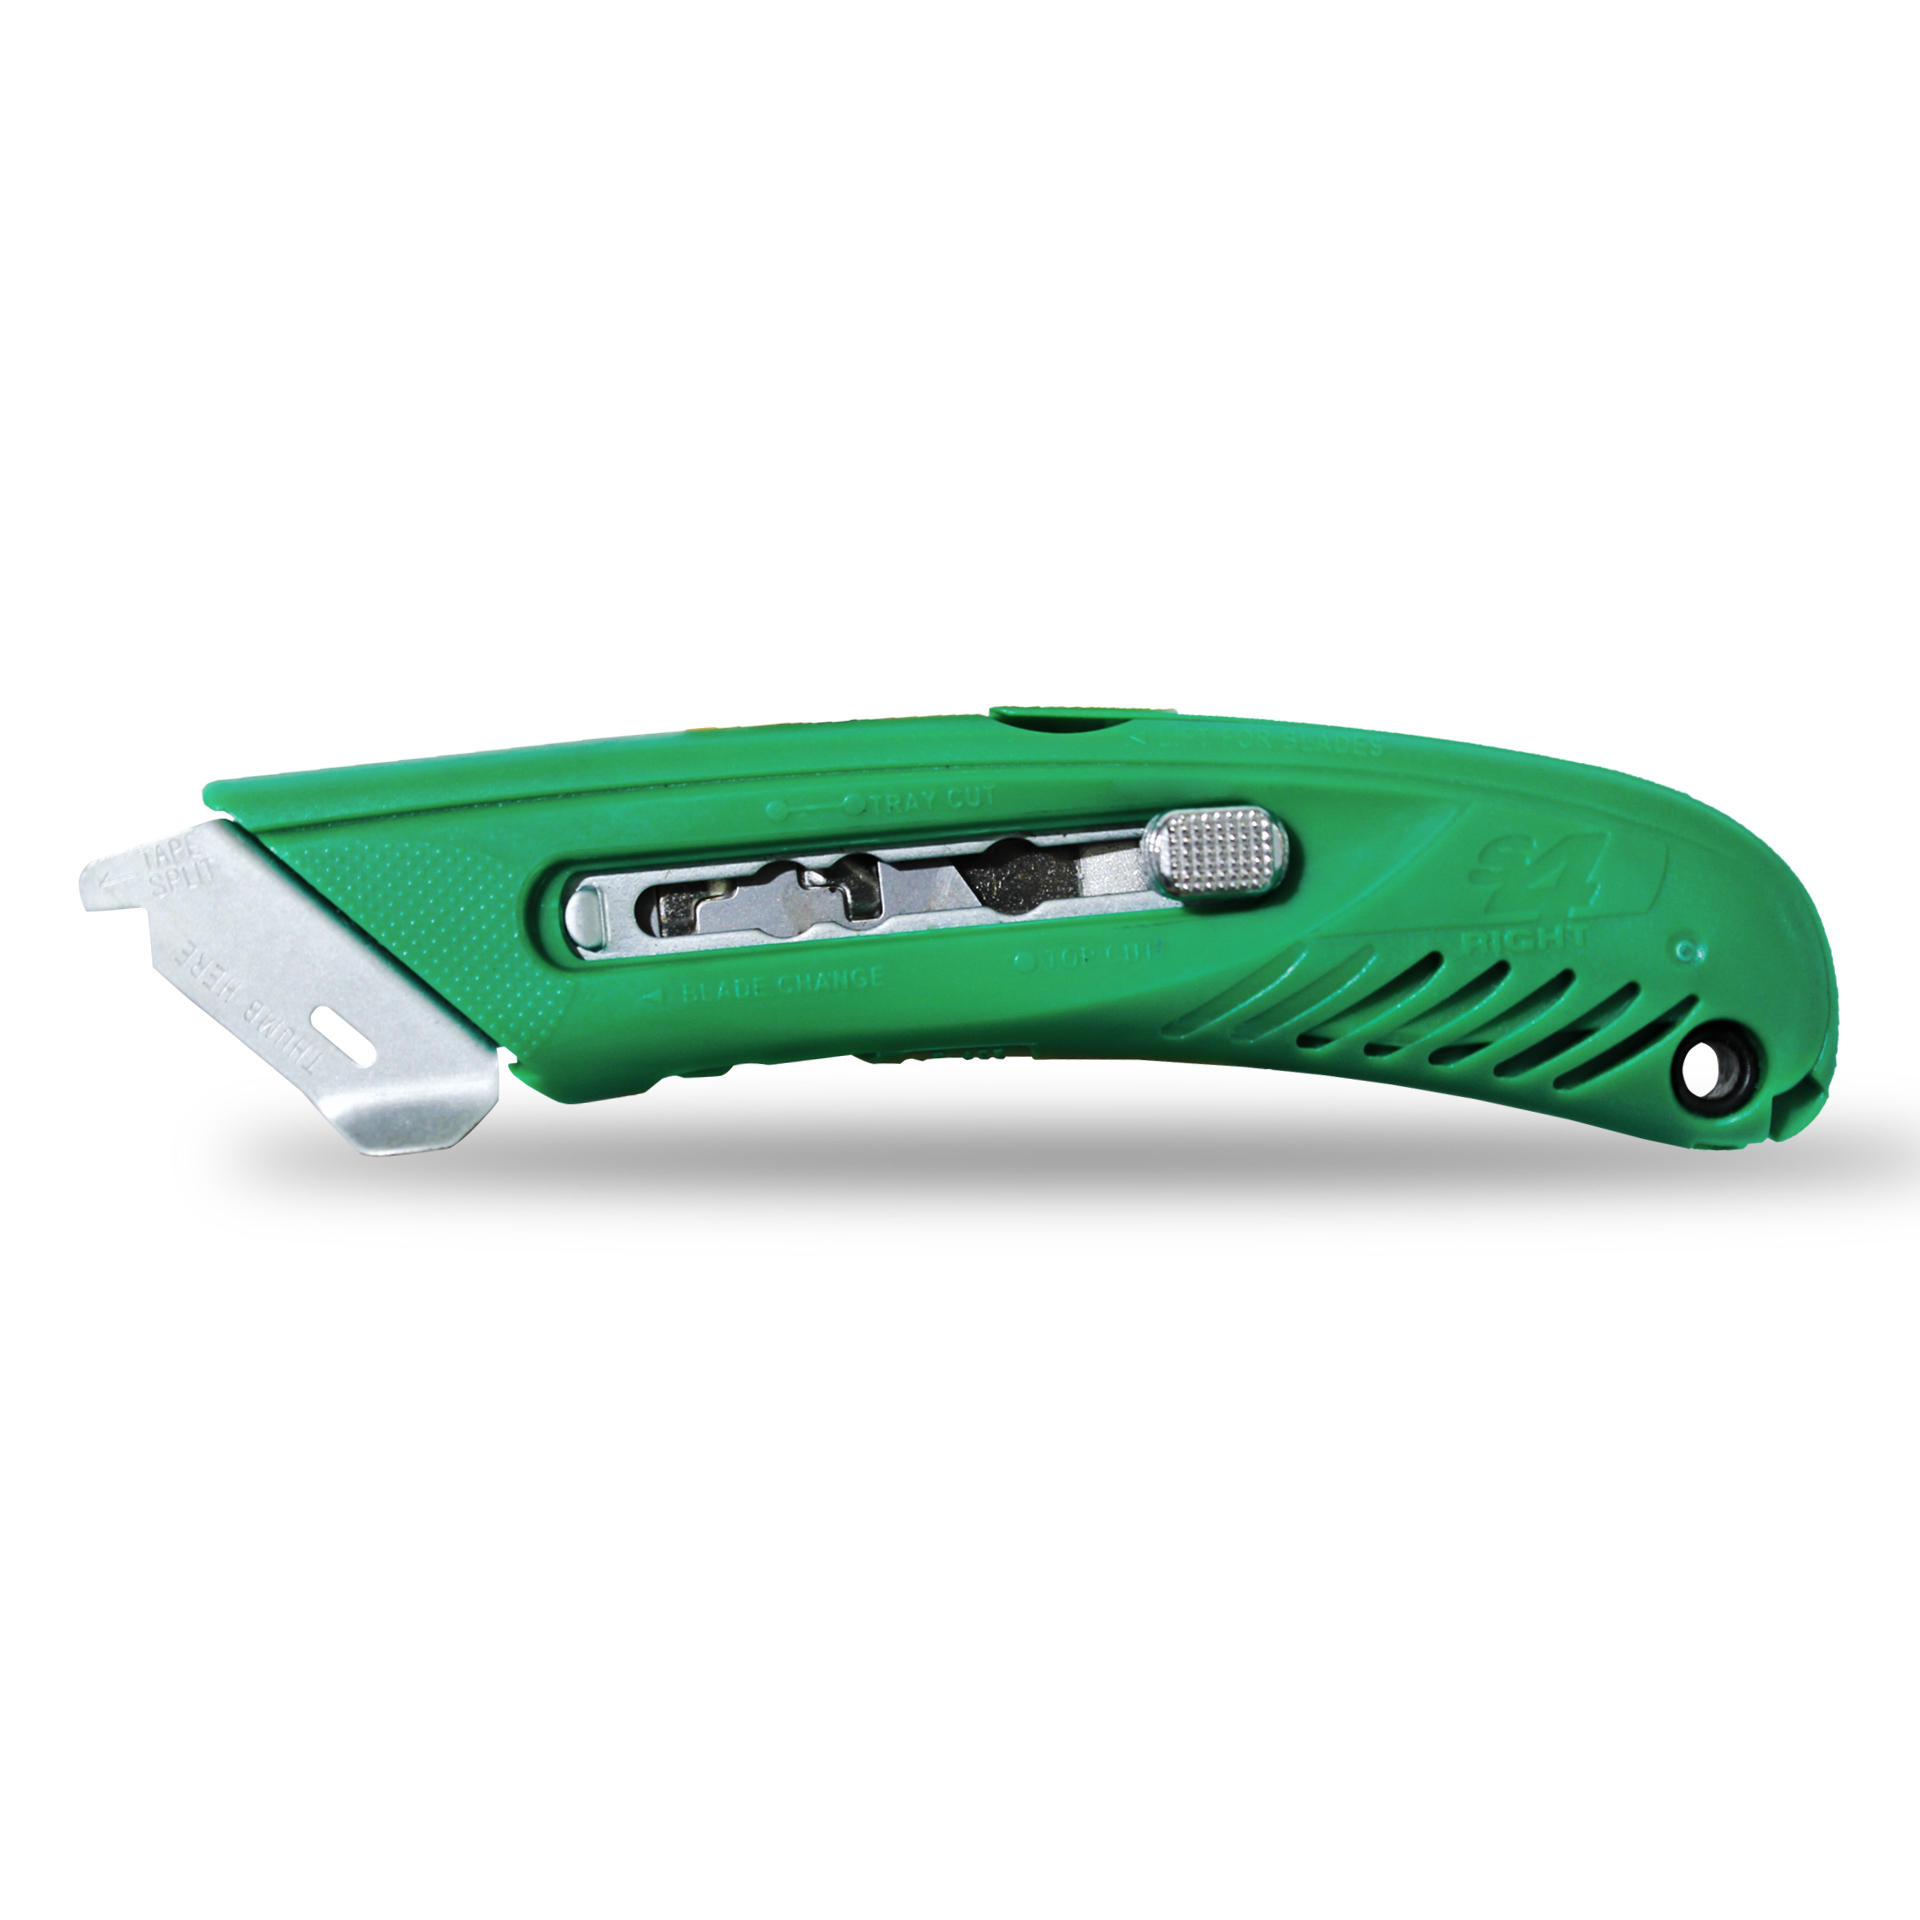 คัตเตอร์นิรภัยอเนกประสงค์ PHC S4 Safety Cutter สีเขียว